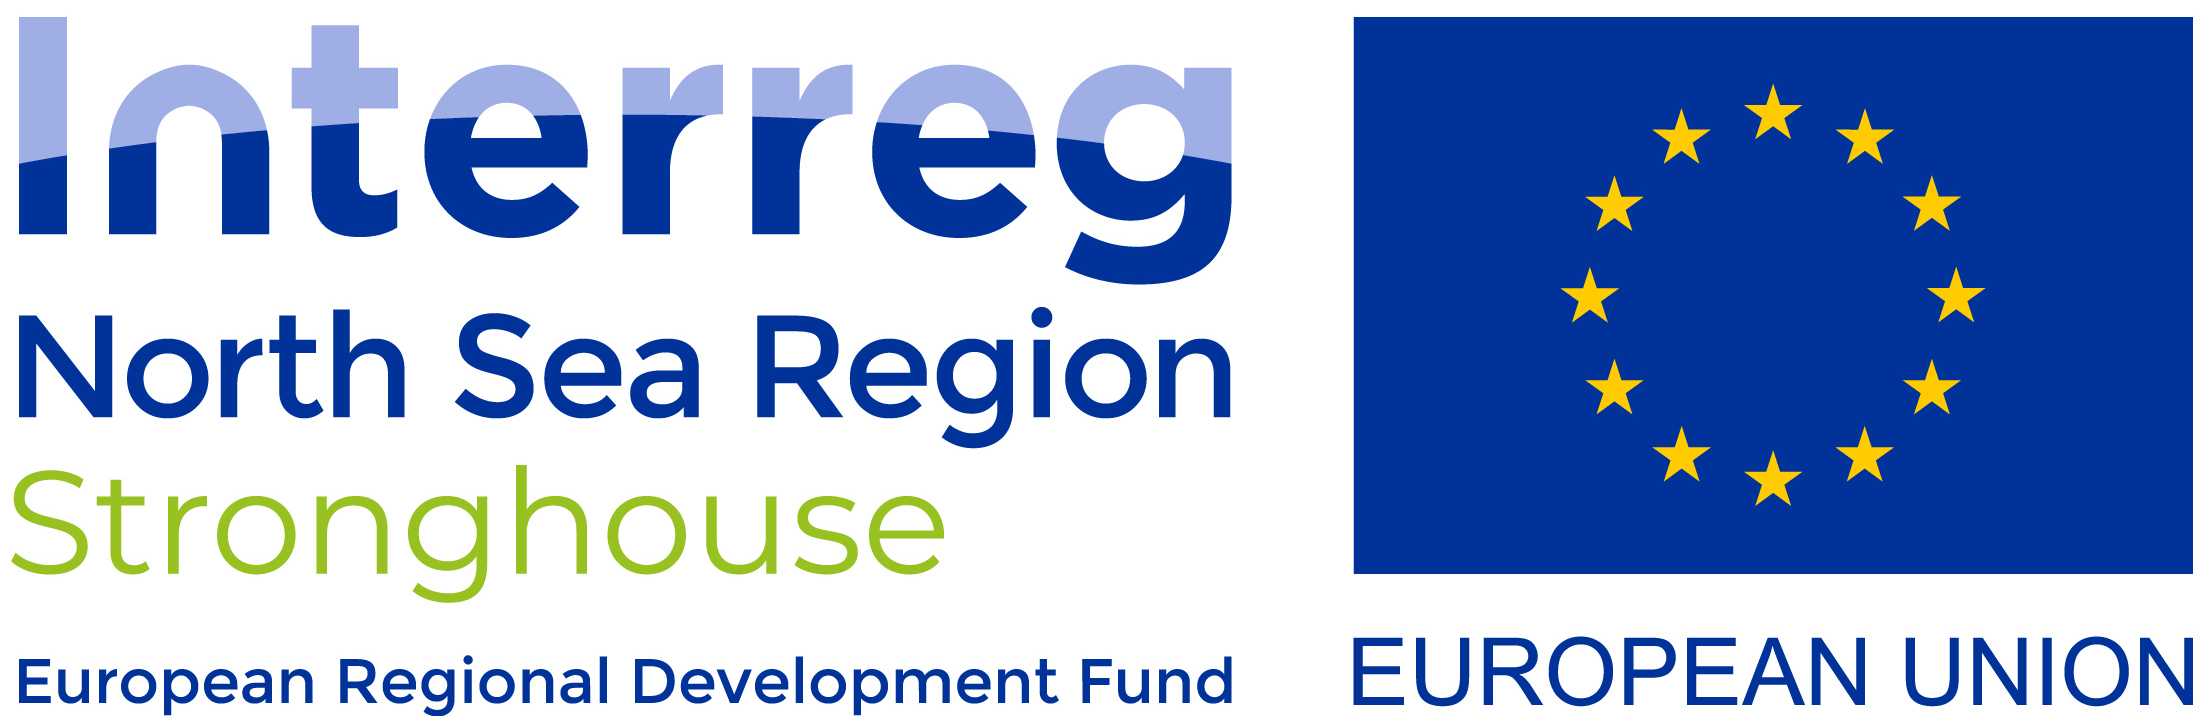 Stronghouse EU logo